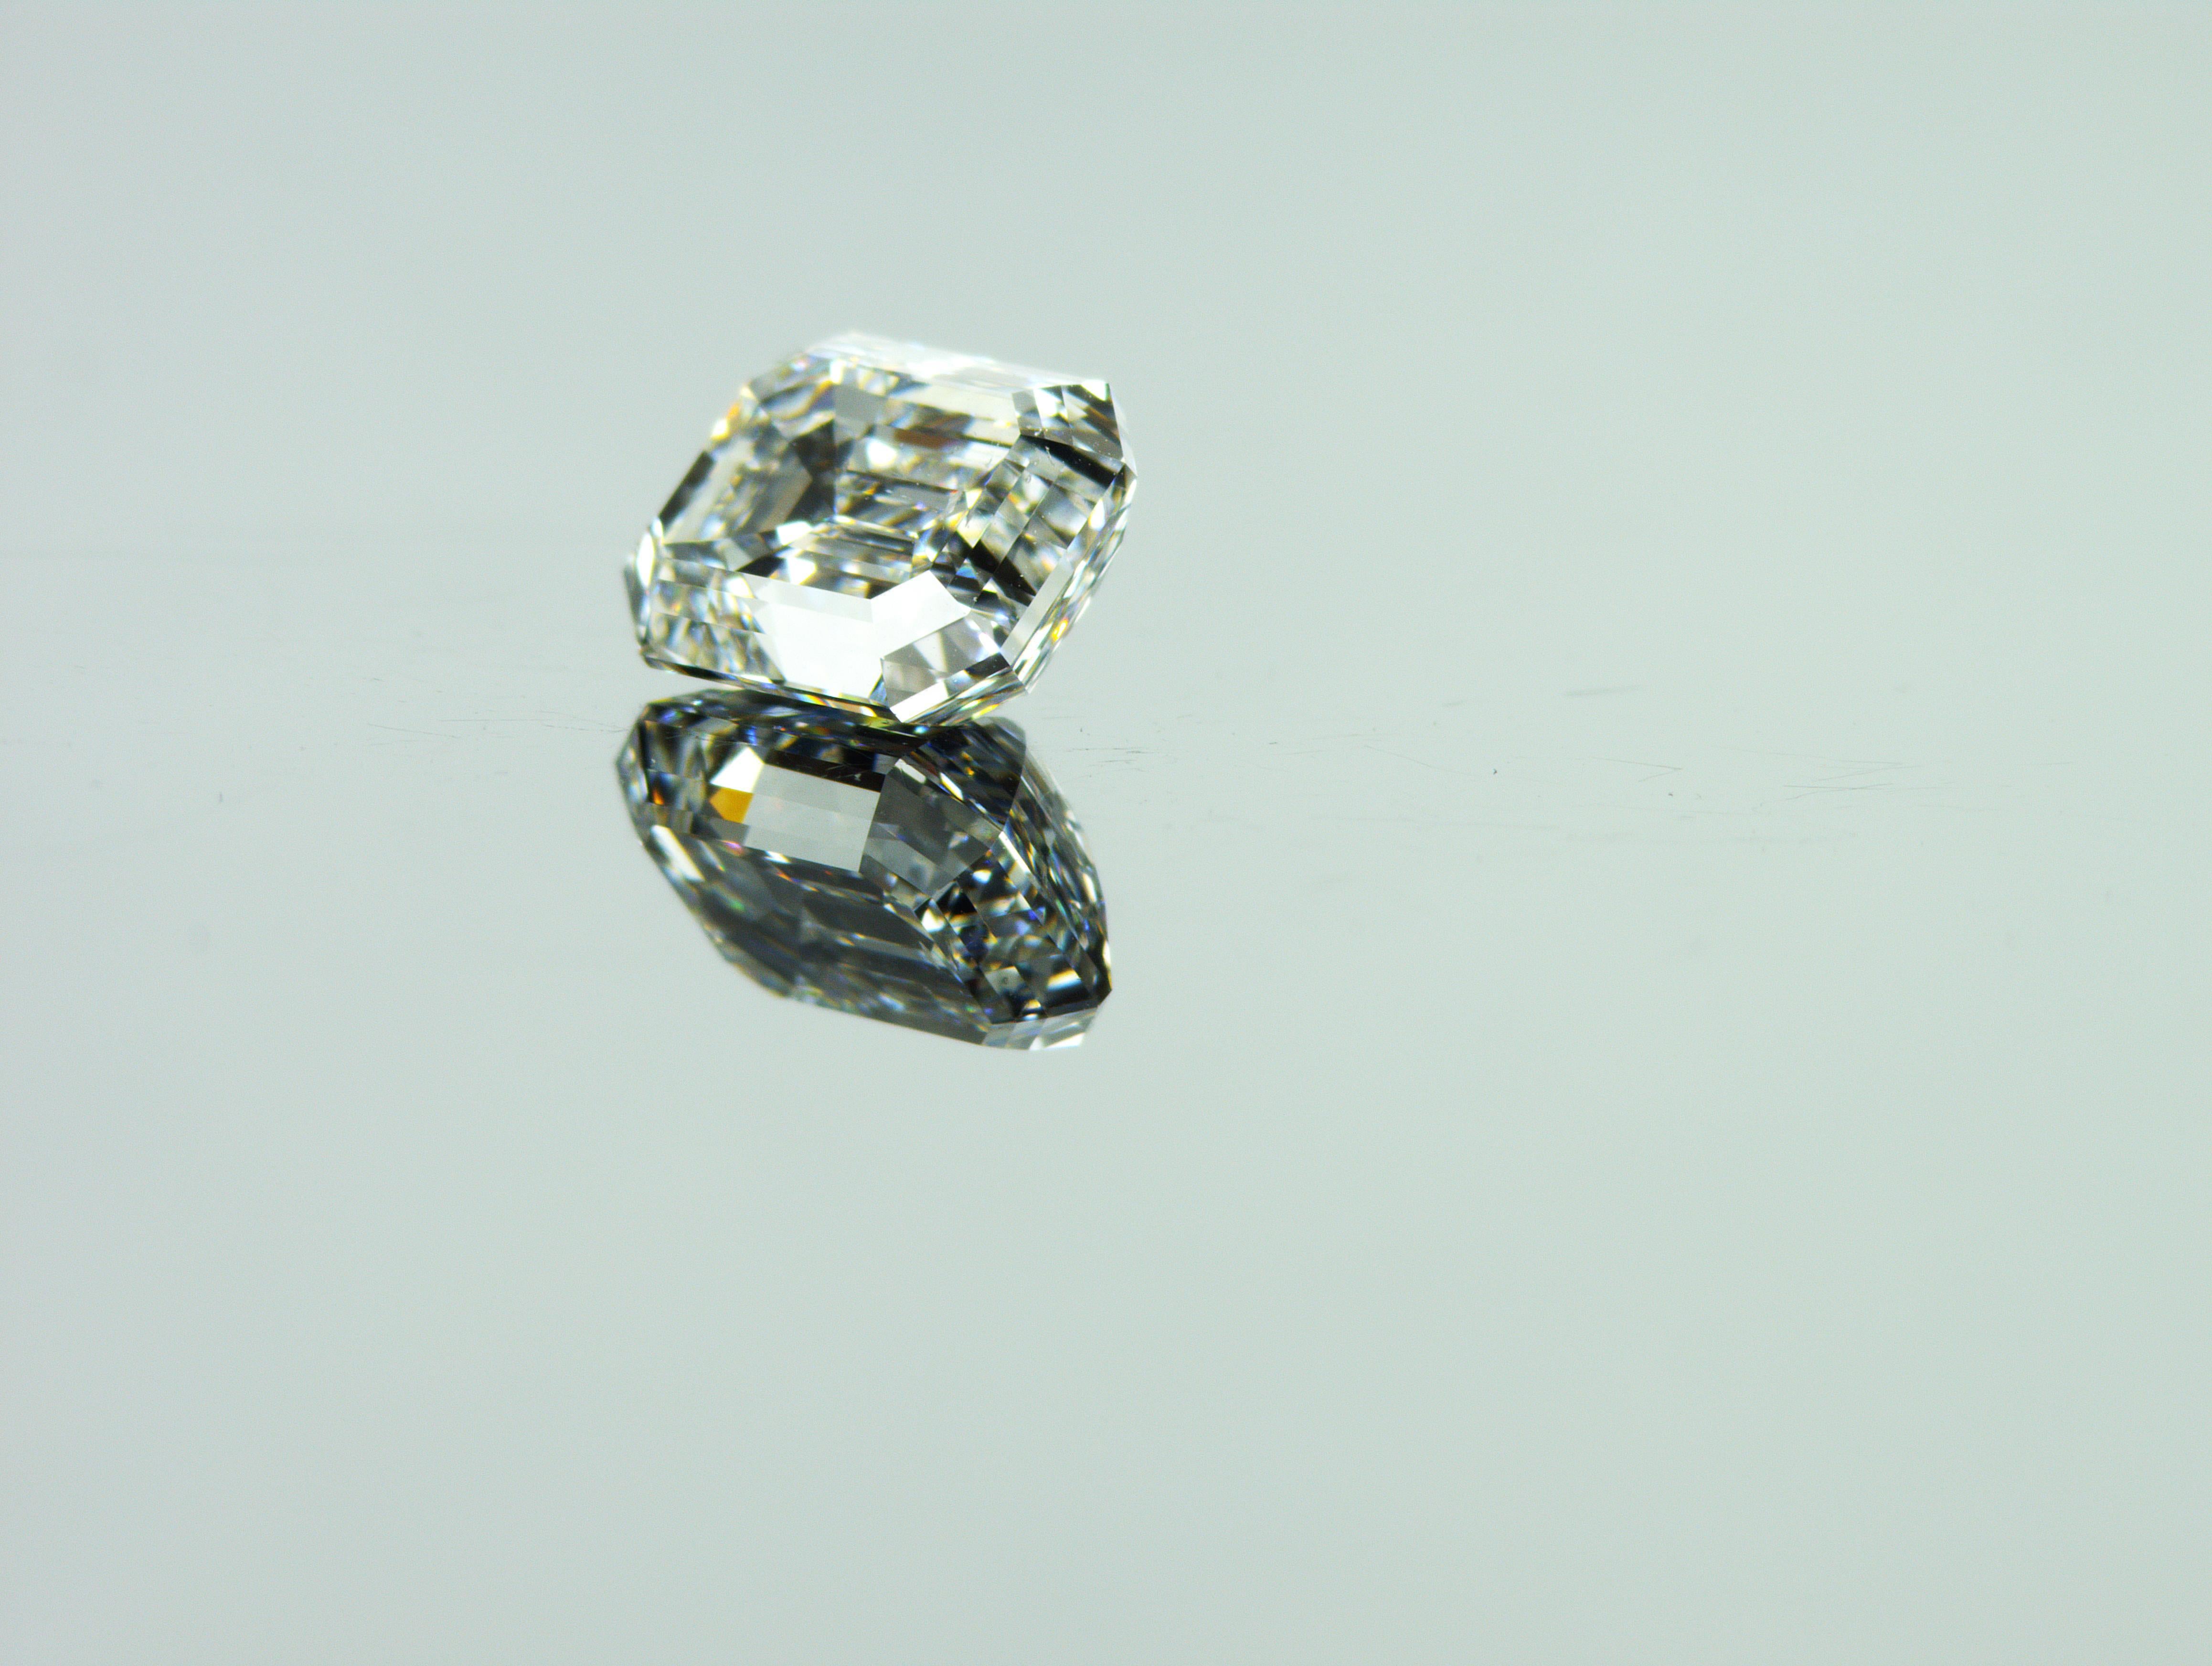 Nous sommes une société de production de diamants naturels située à Dubaï.
Poids : 2.00ct
Forme : Émeraude
Couleur : blanc rare + (F)
Clarté : SI1
Polonais : Très bon
Symm : Excellent
Dimensions (mm) : 7,87 x 6,14 x 4,38
Tous nos diamants avec